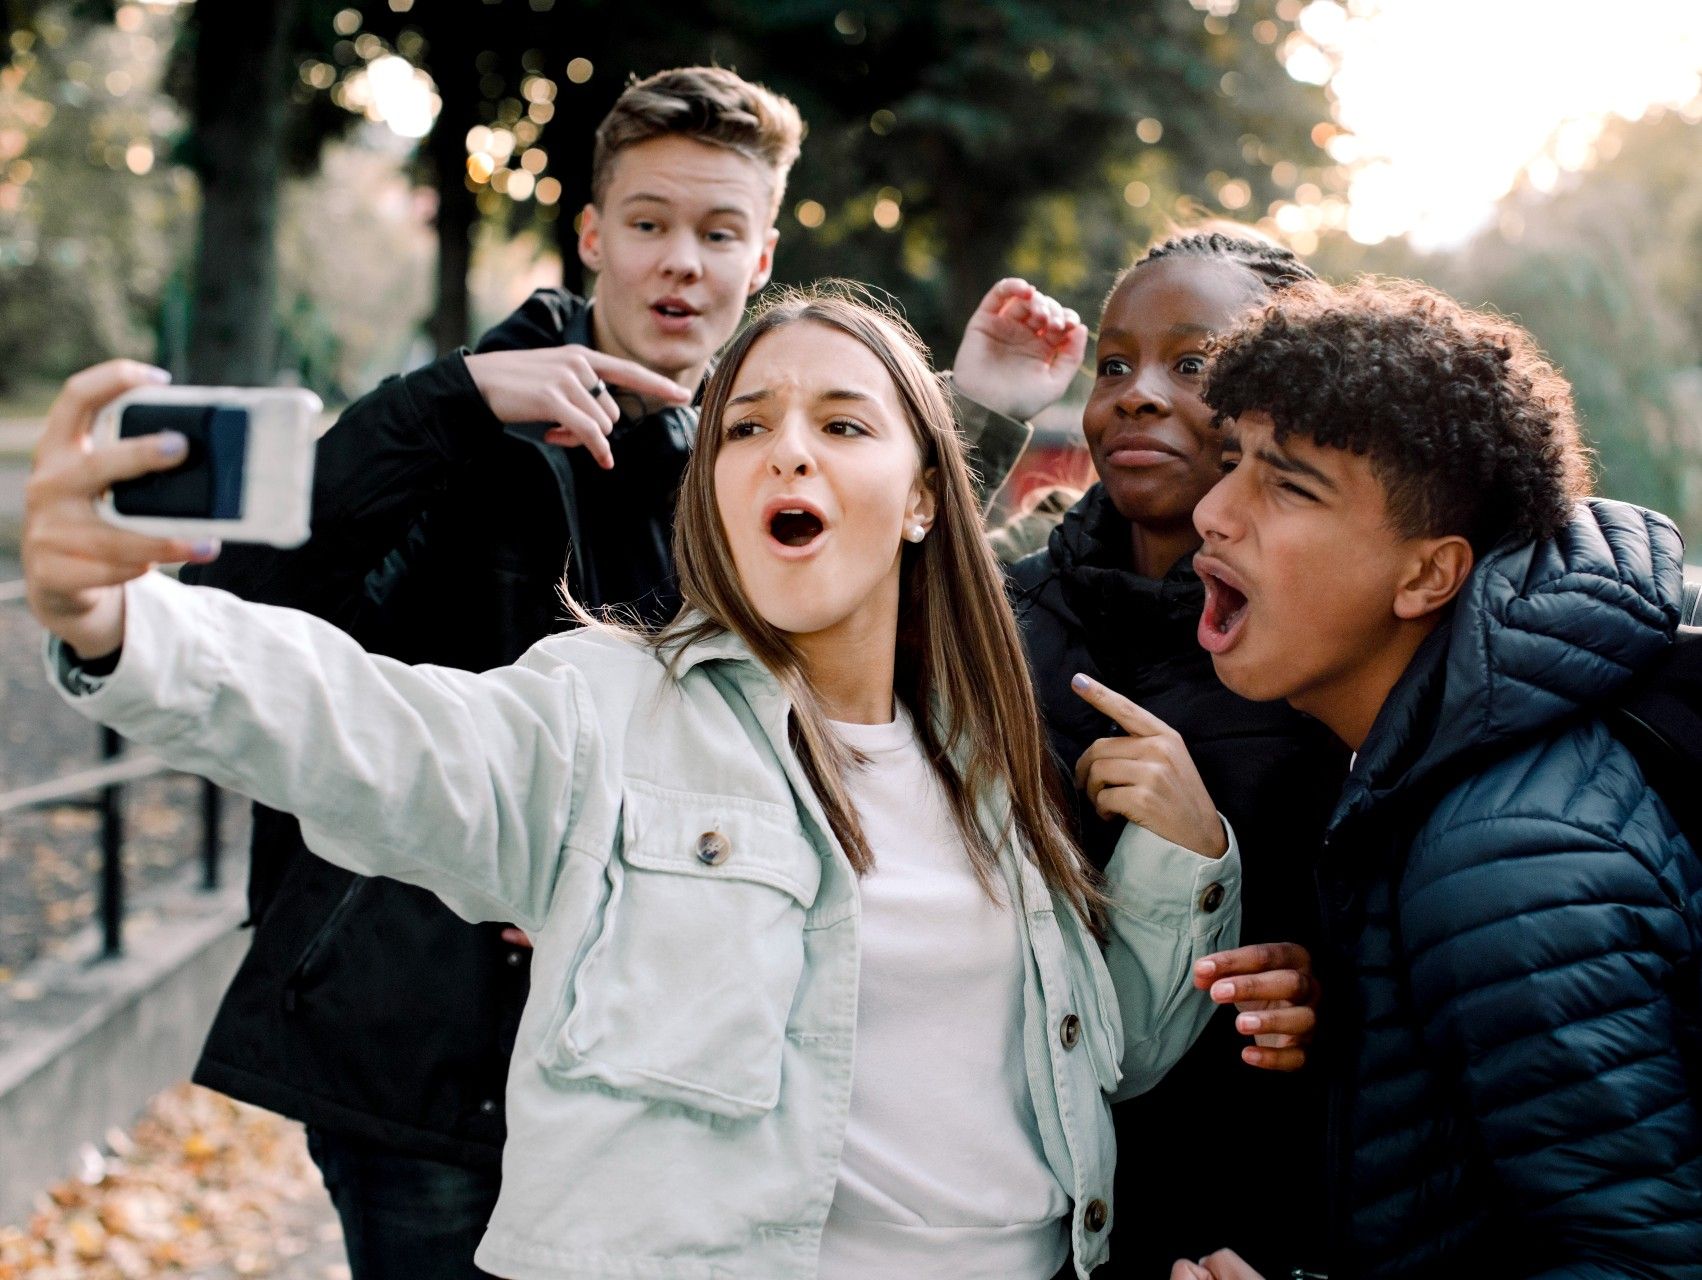 BeReal er ungdommens nye favoritmedie. Hver dag tikker en notifikation ind, der påminder brugeren om at "be real" og tage en selfie. Men hvor "real" er "BeReal". Foto: Getty Images